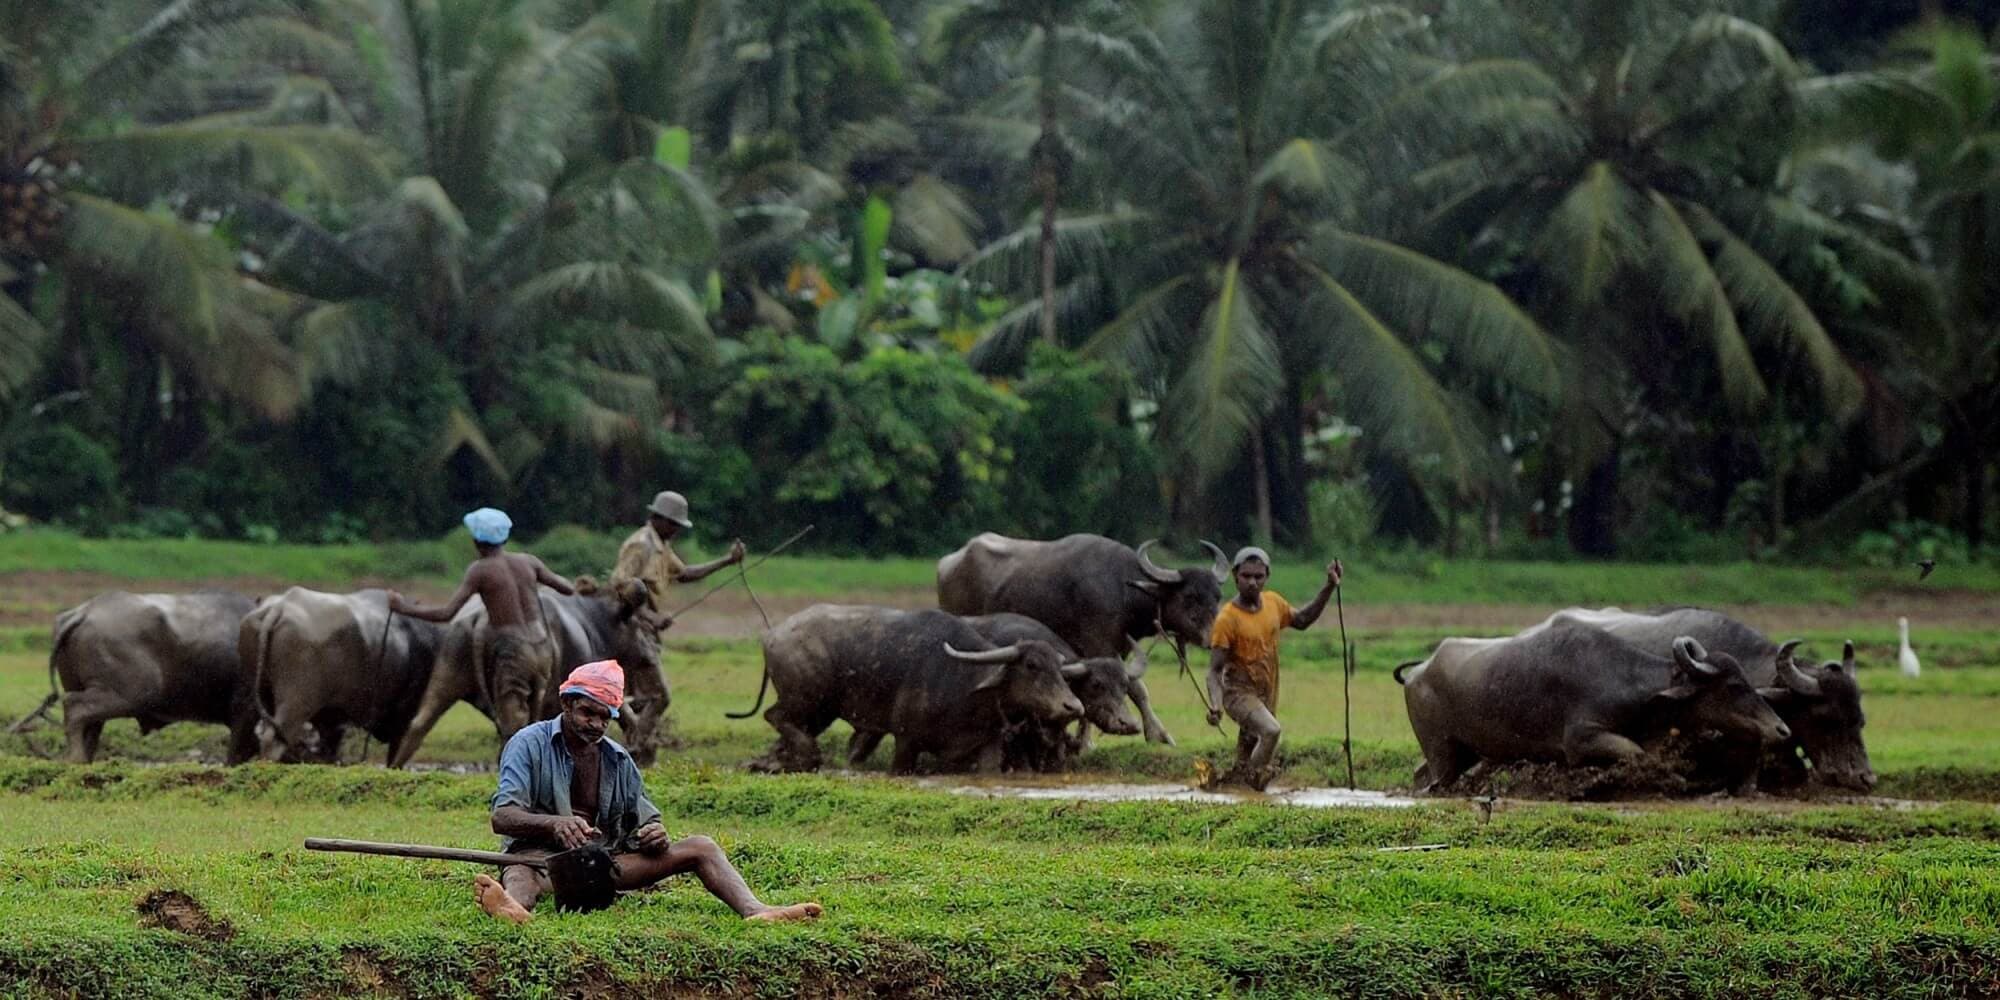 مزارعون يزرعون حقول الأرز بالثيران في باكامونا بسريلانكا